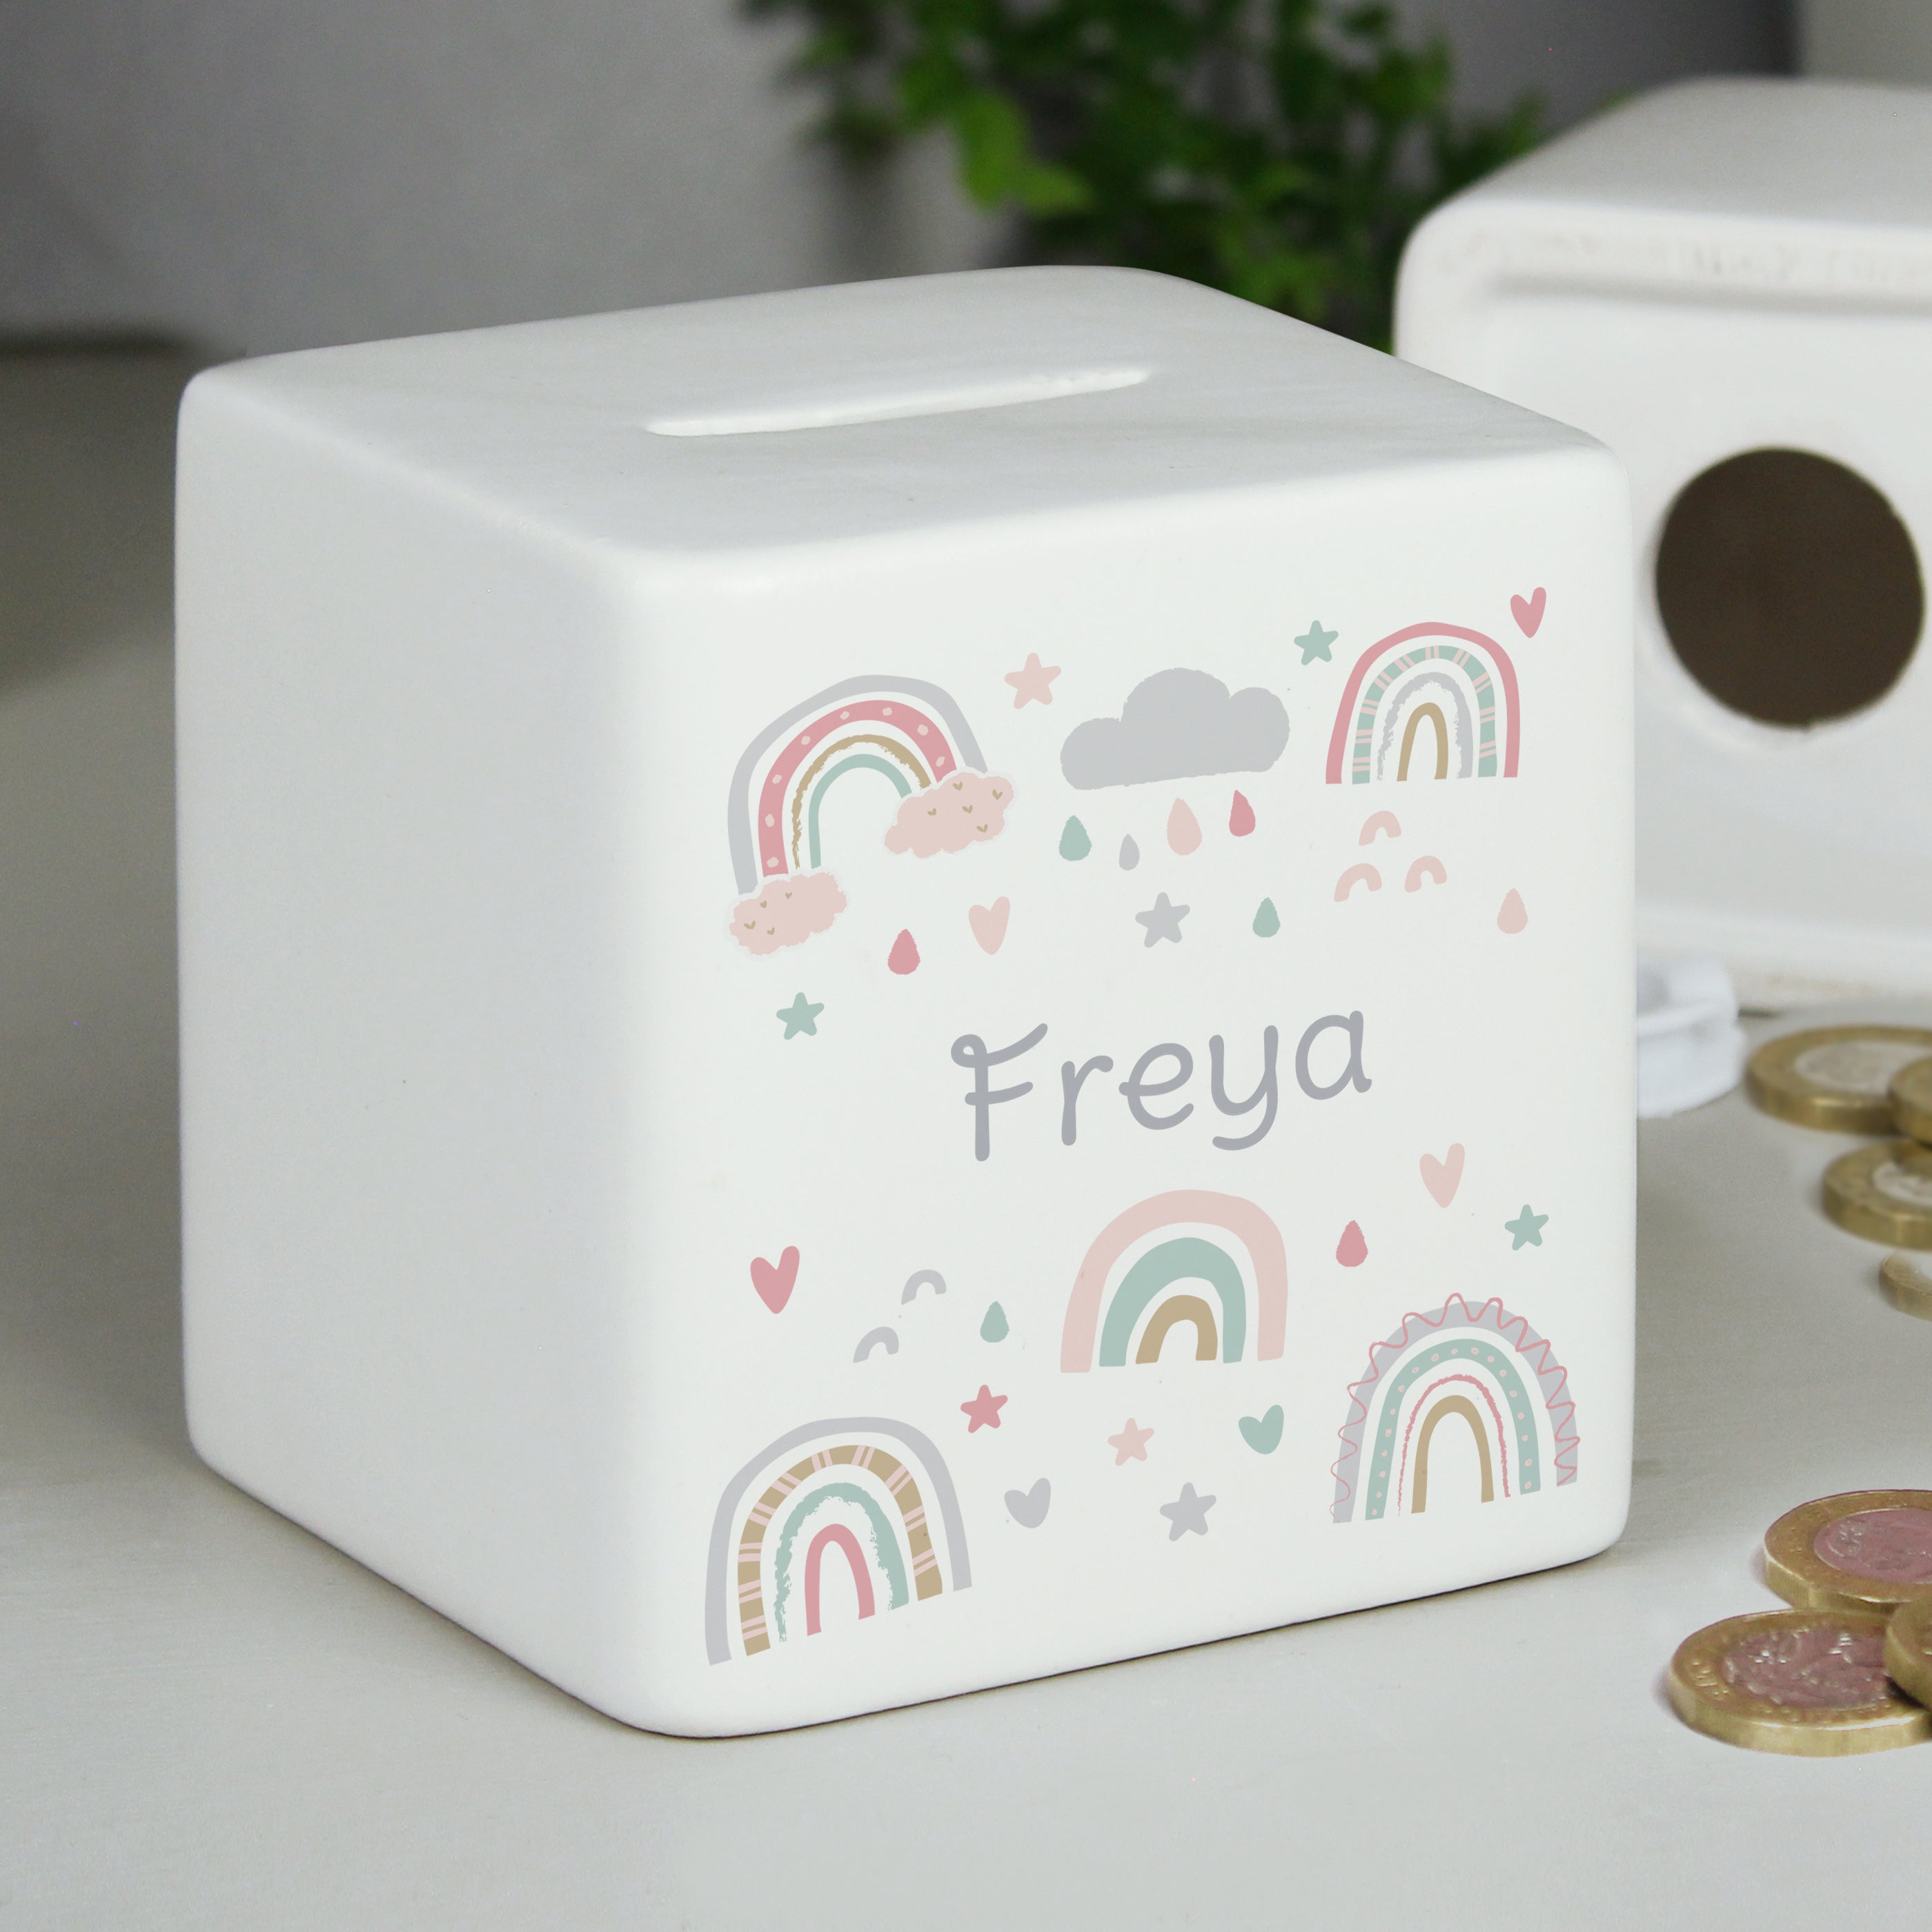 Personalised Rainbow Ceramic Square Money Box